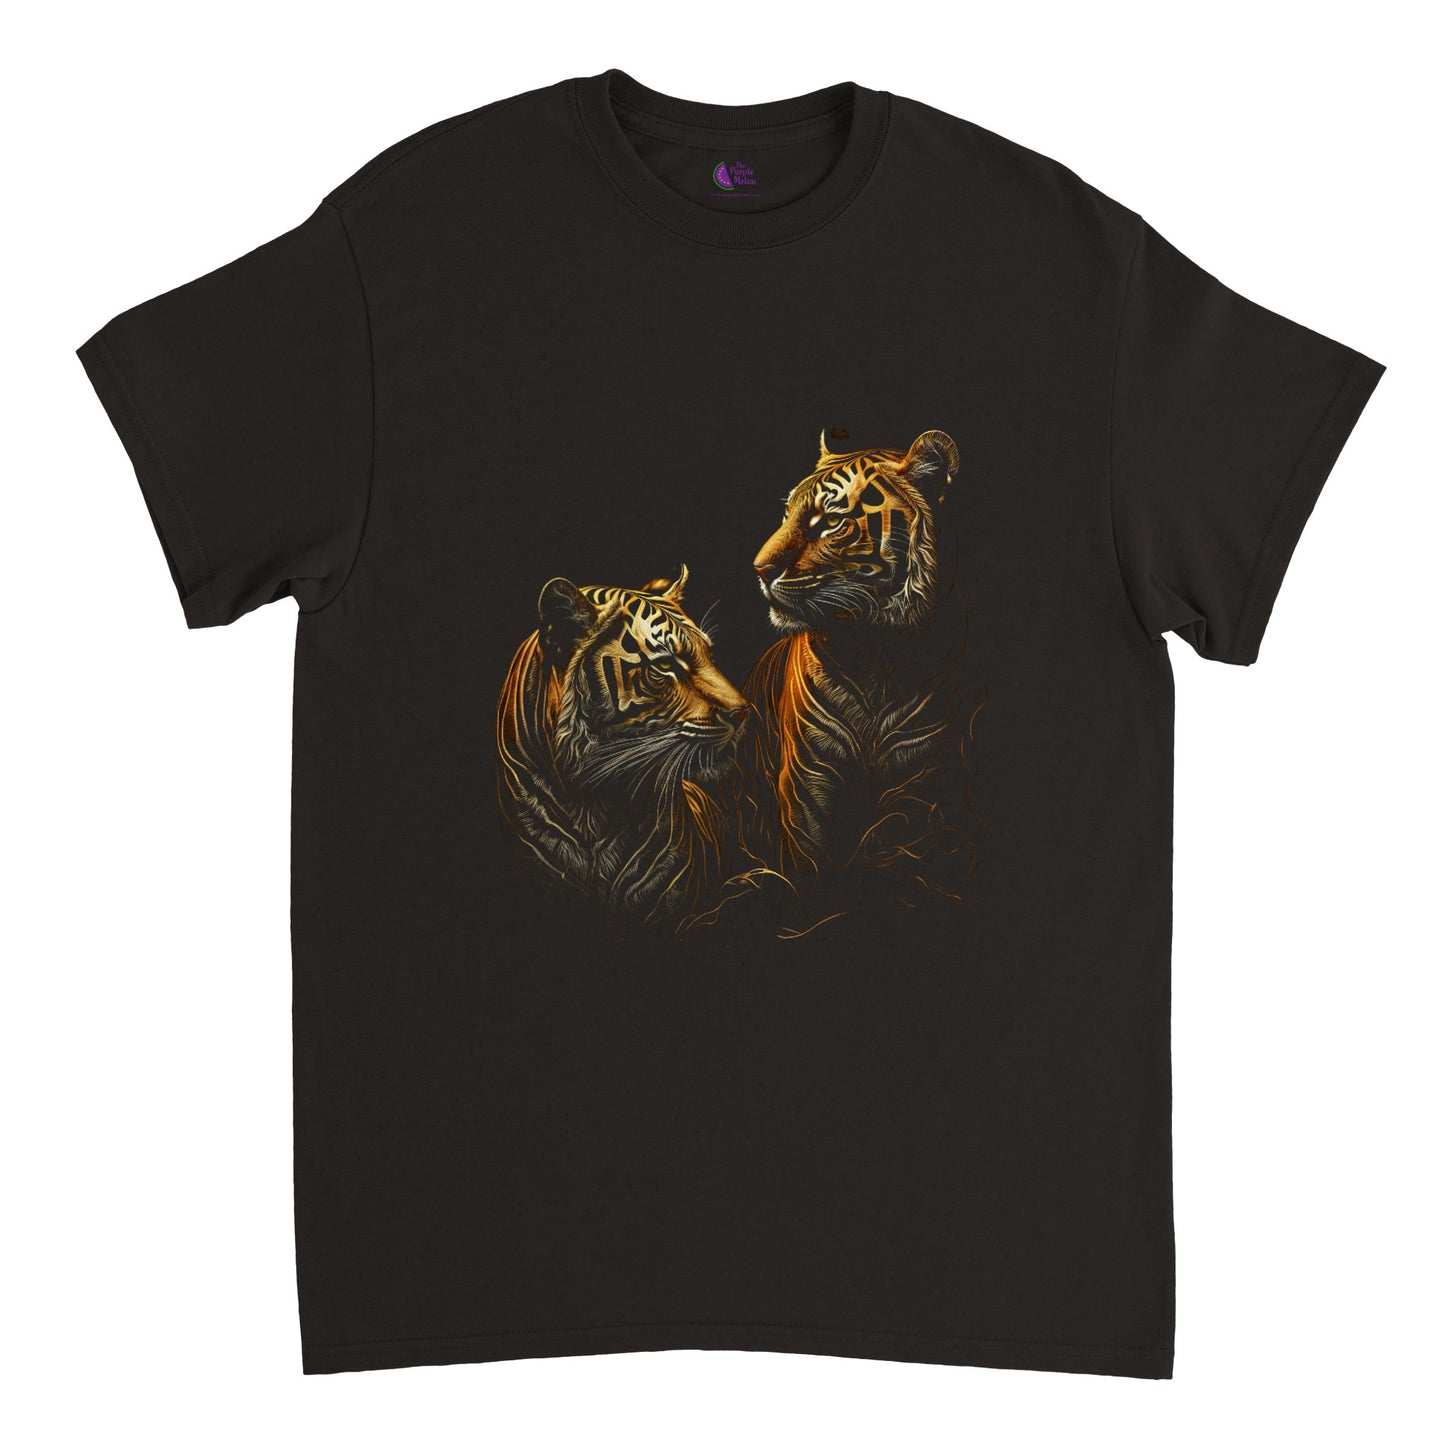 A Pair of Golden Tigers Heavyweight Unisex Crewneck T-shirt